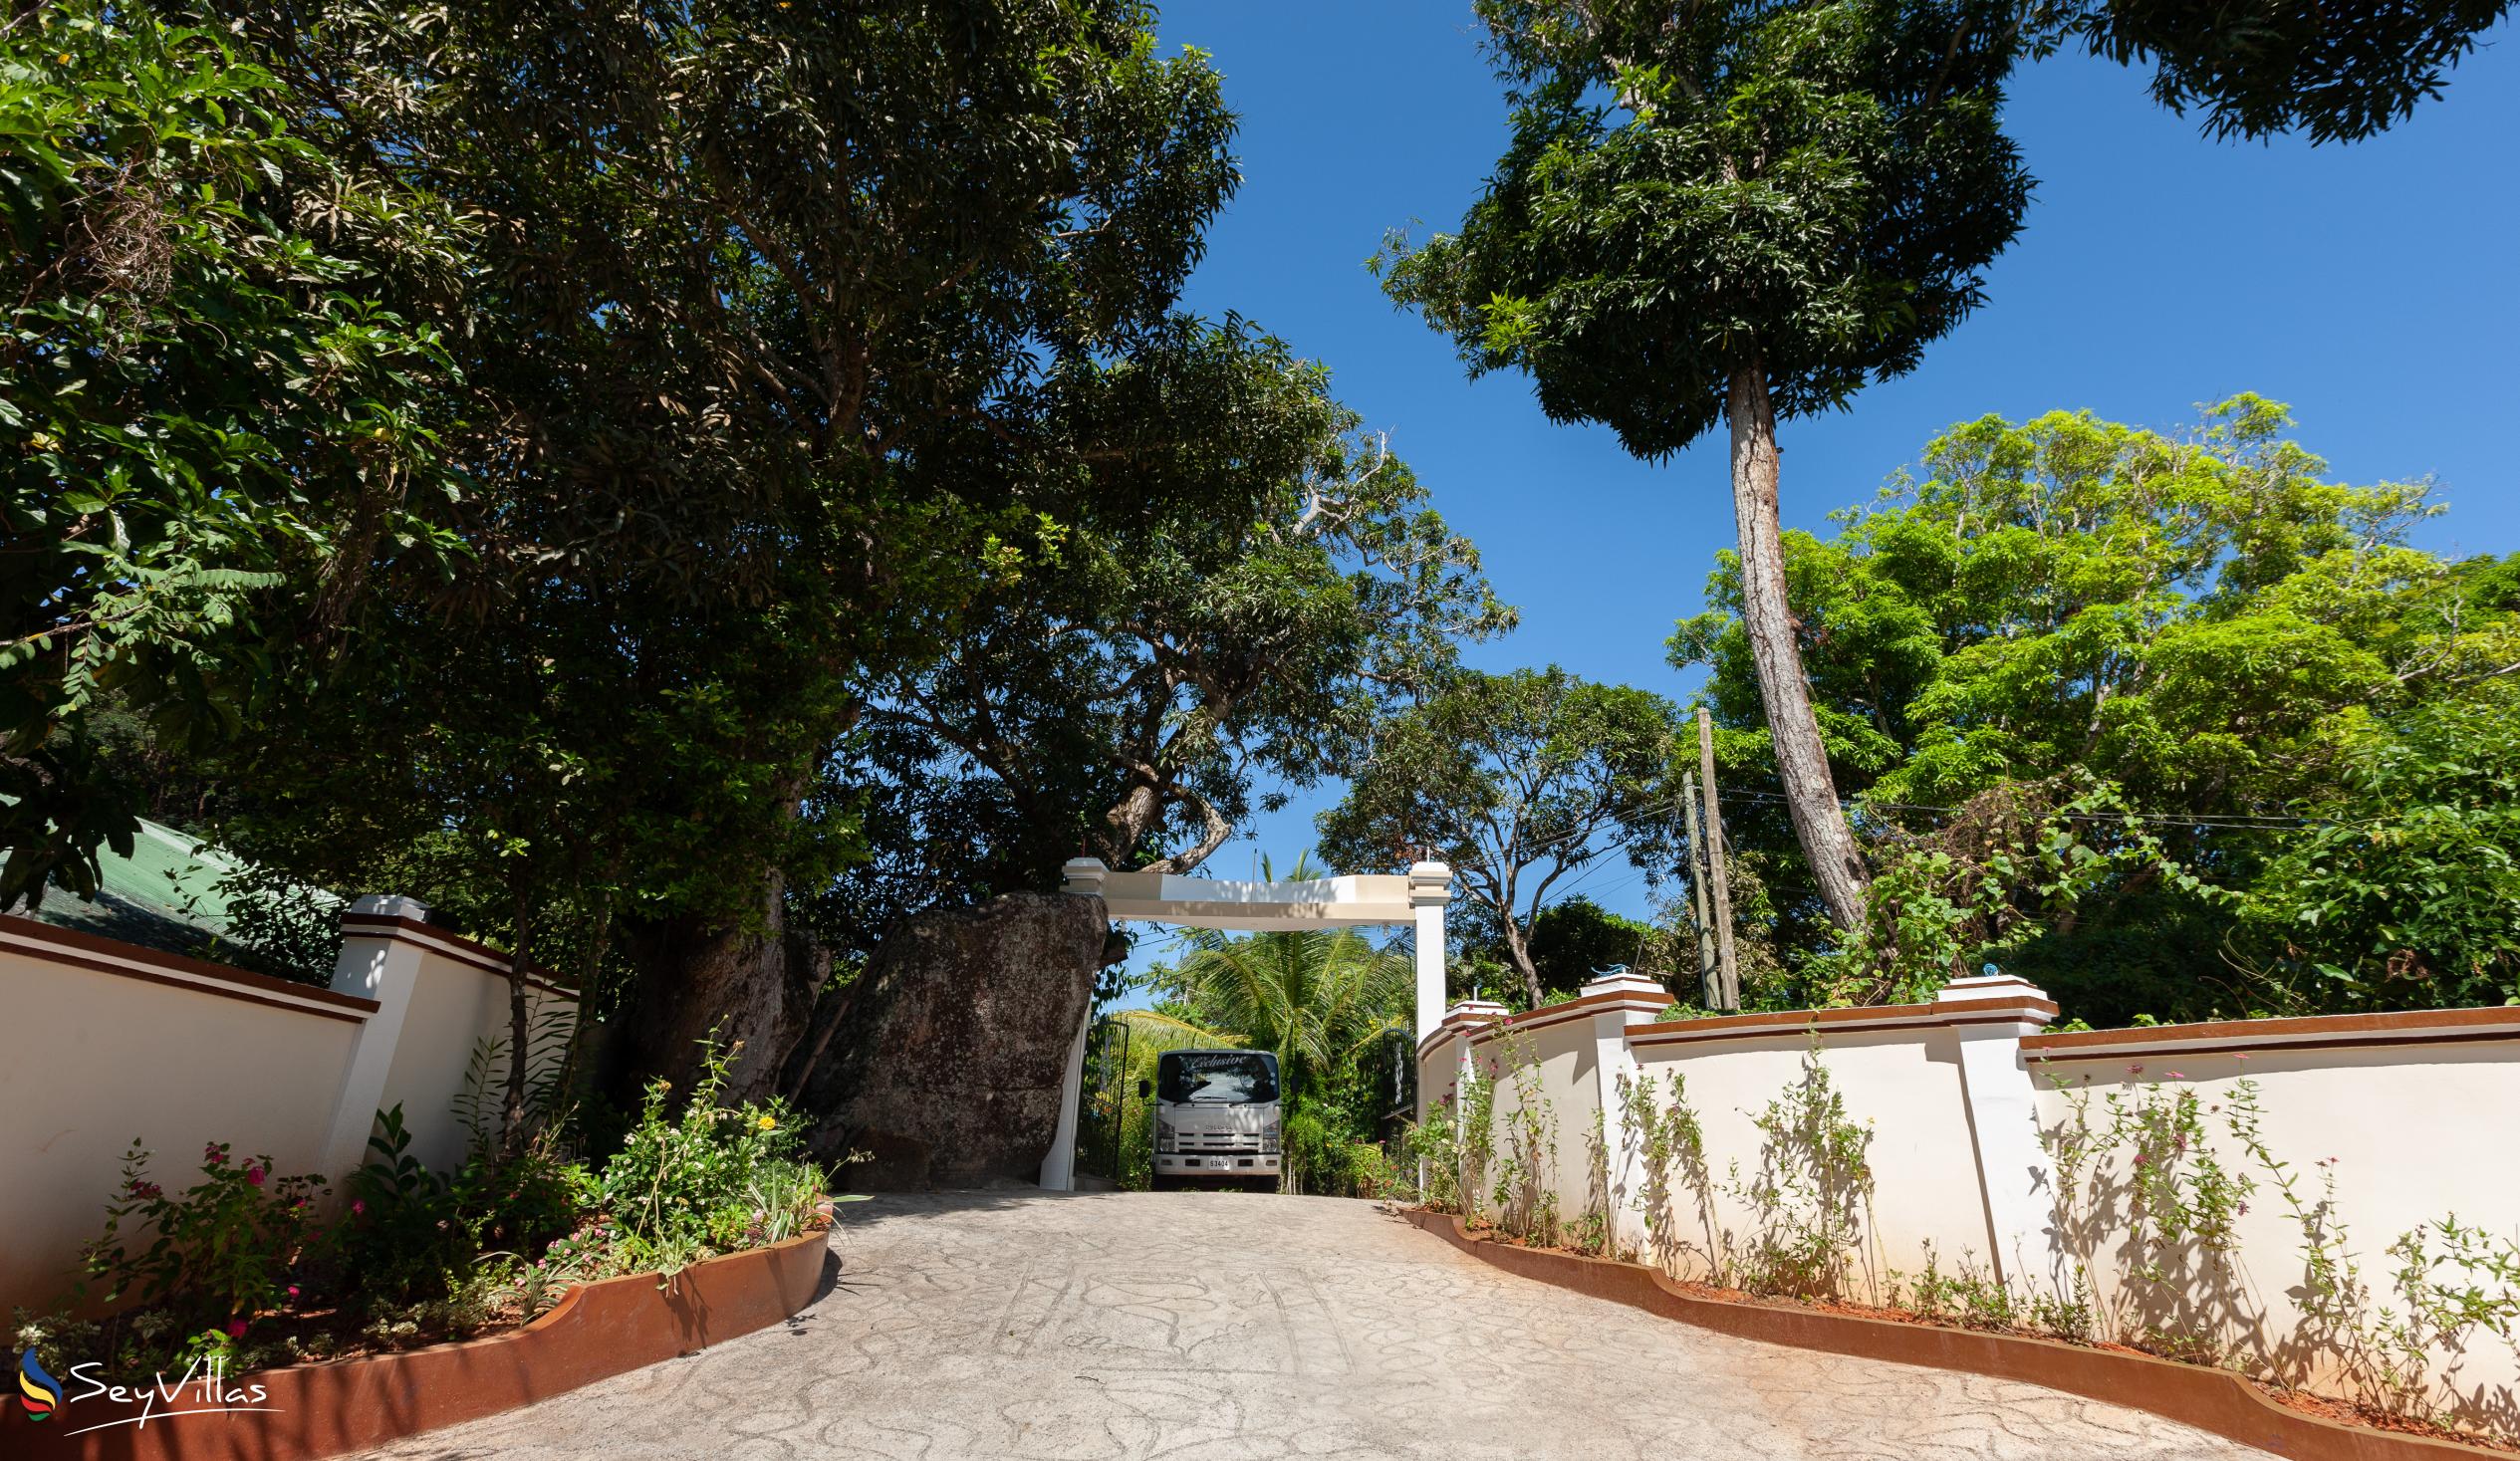 Foto 25: Mountain View Hotel - Posizione - La Digue (Seychelles)